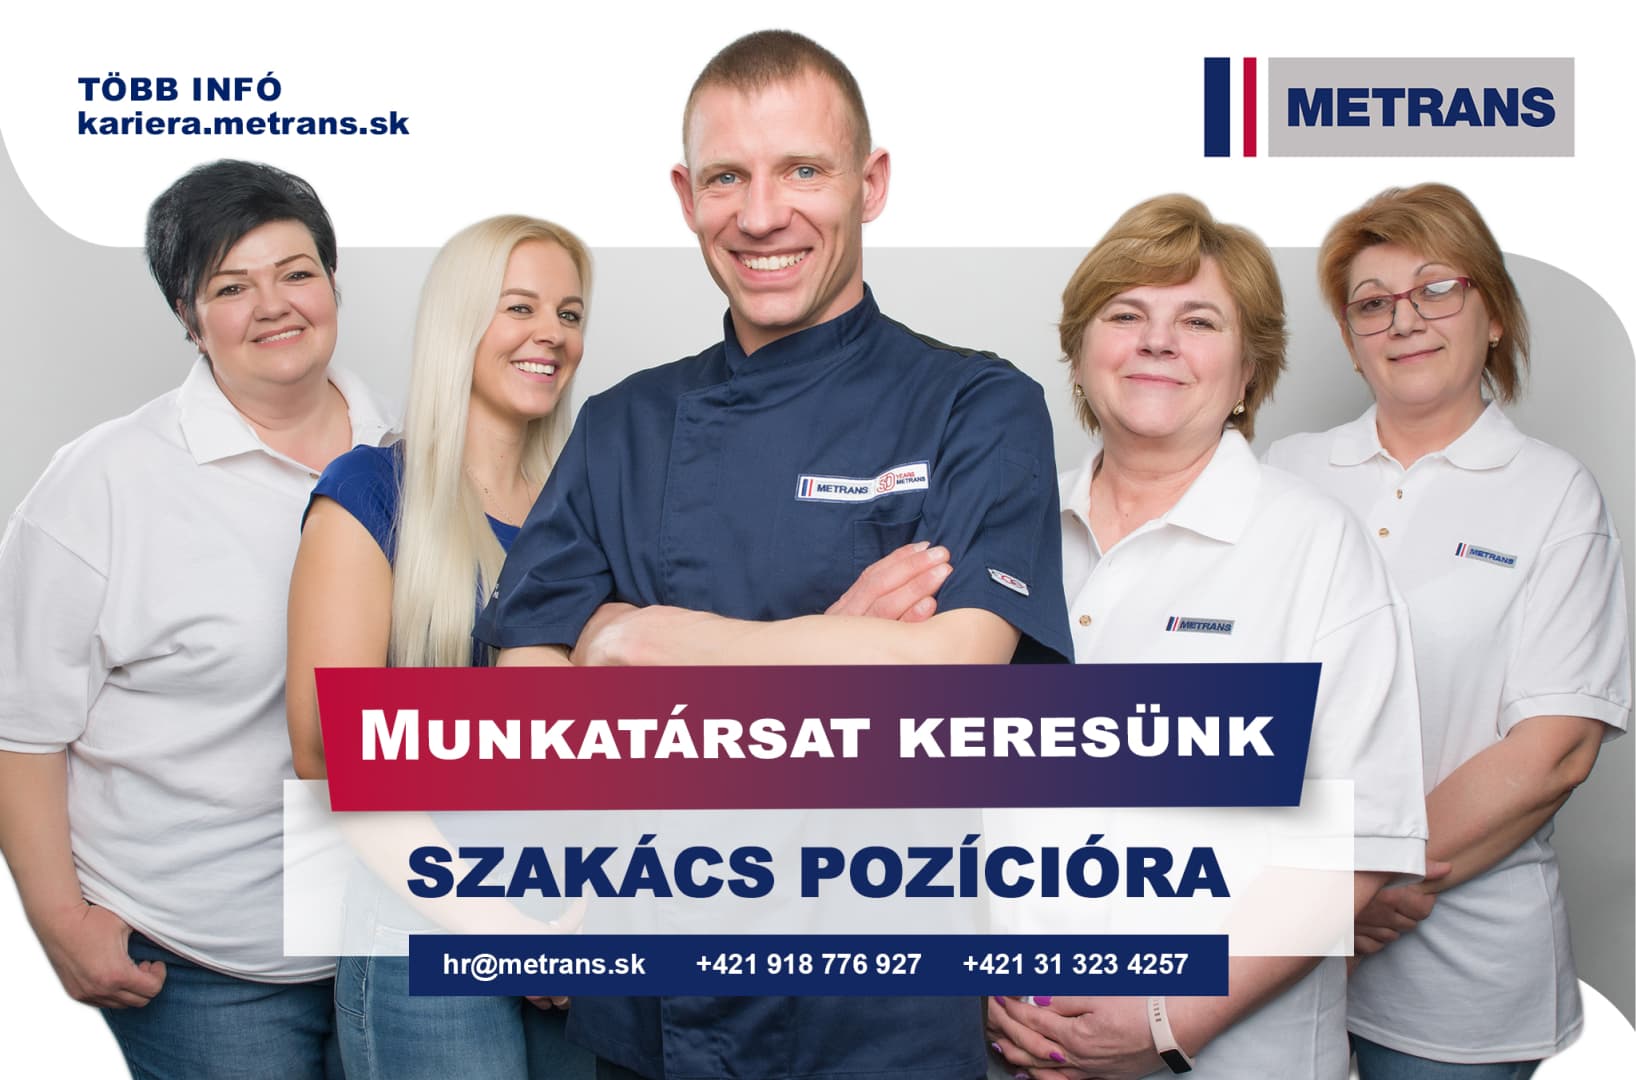 Üzemi konyhájára szakácsok jelentkezését várja a METRANS vállalat Dunaszerdahelyen!